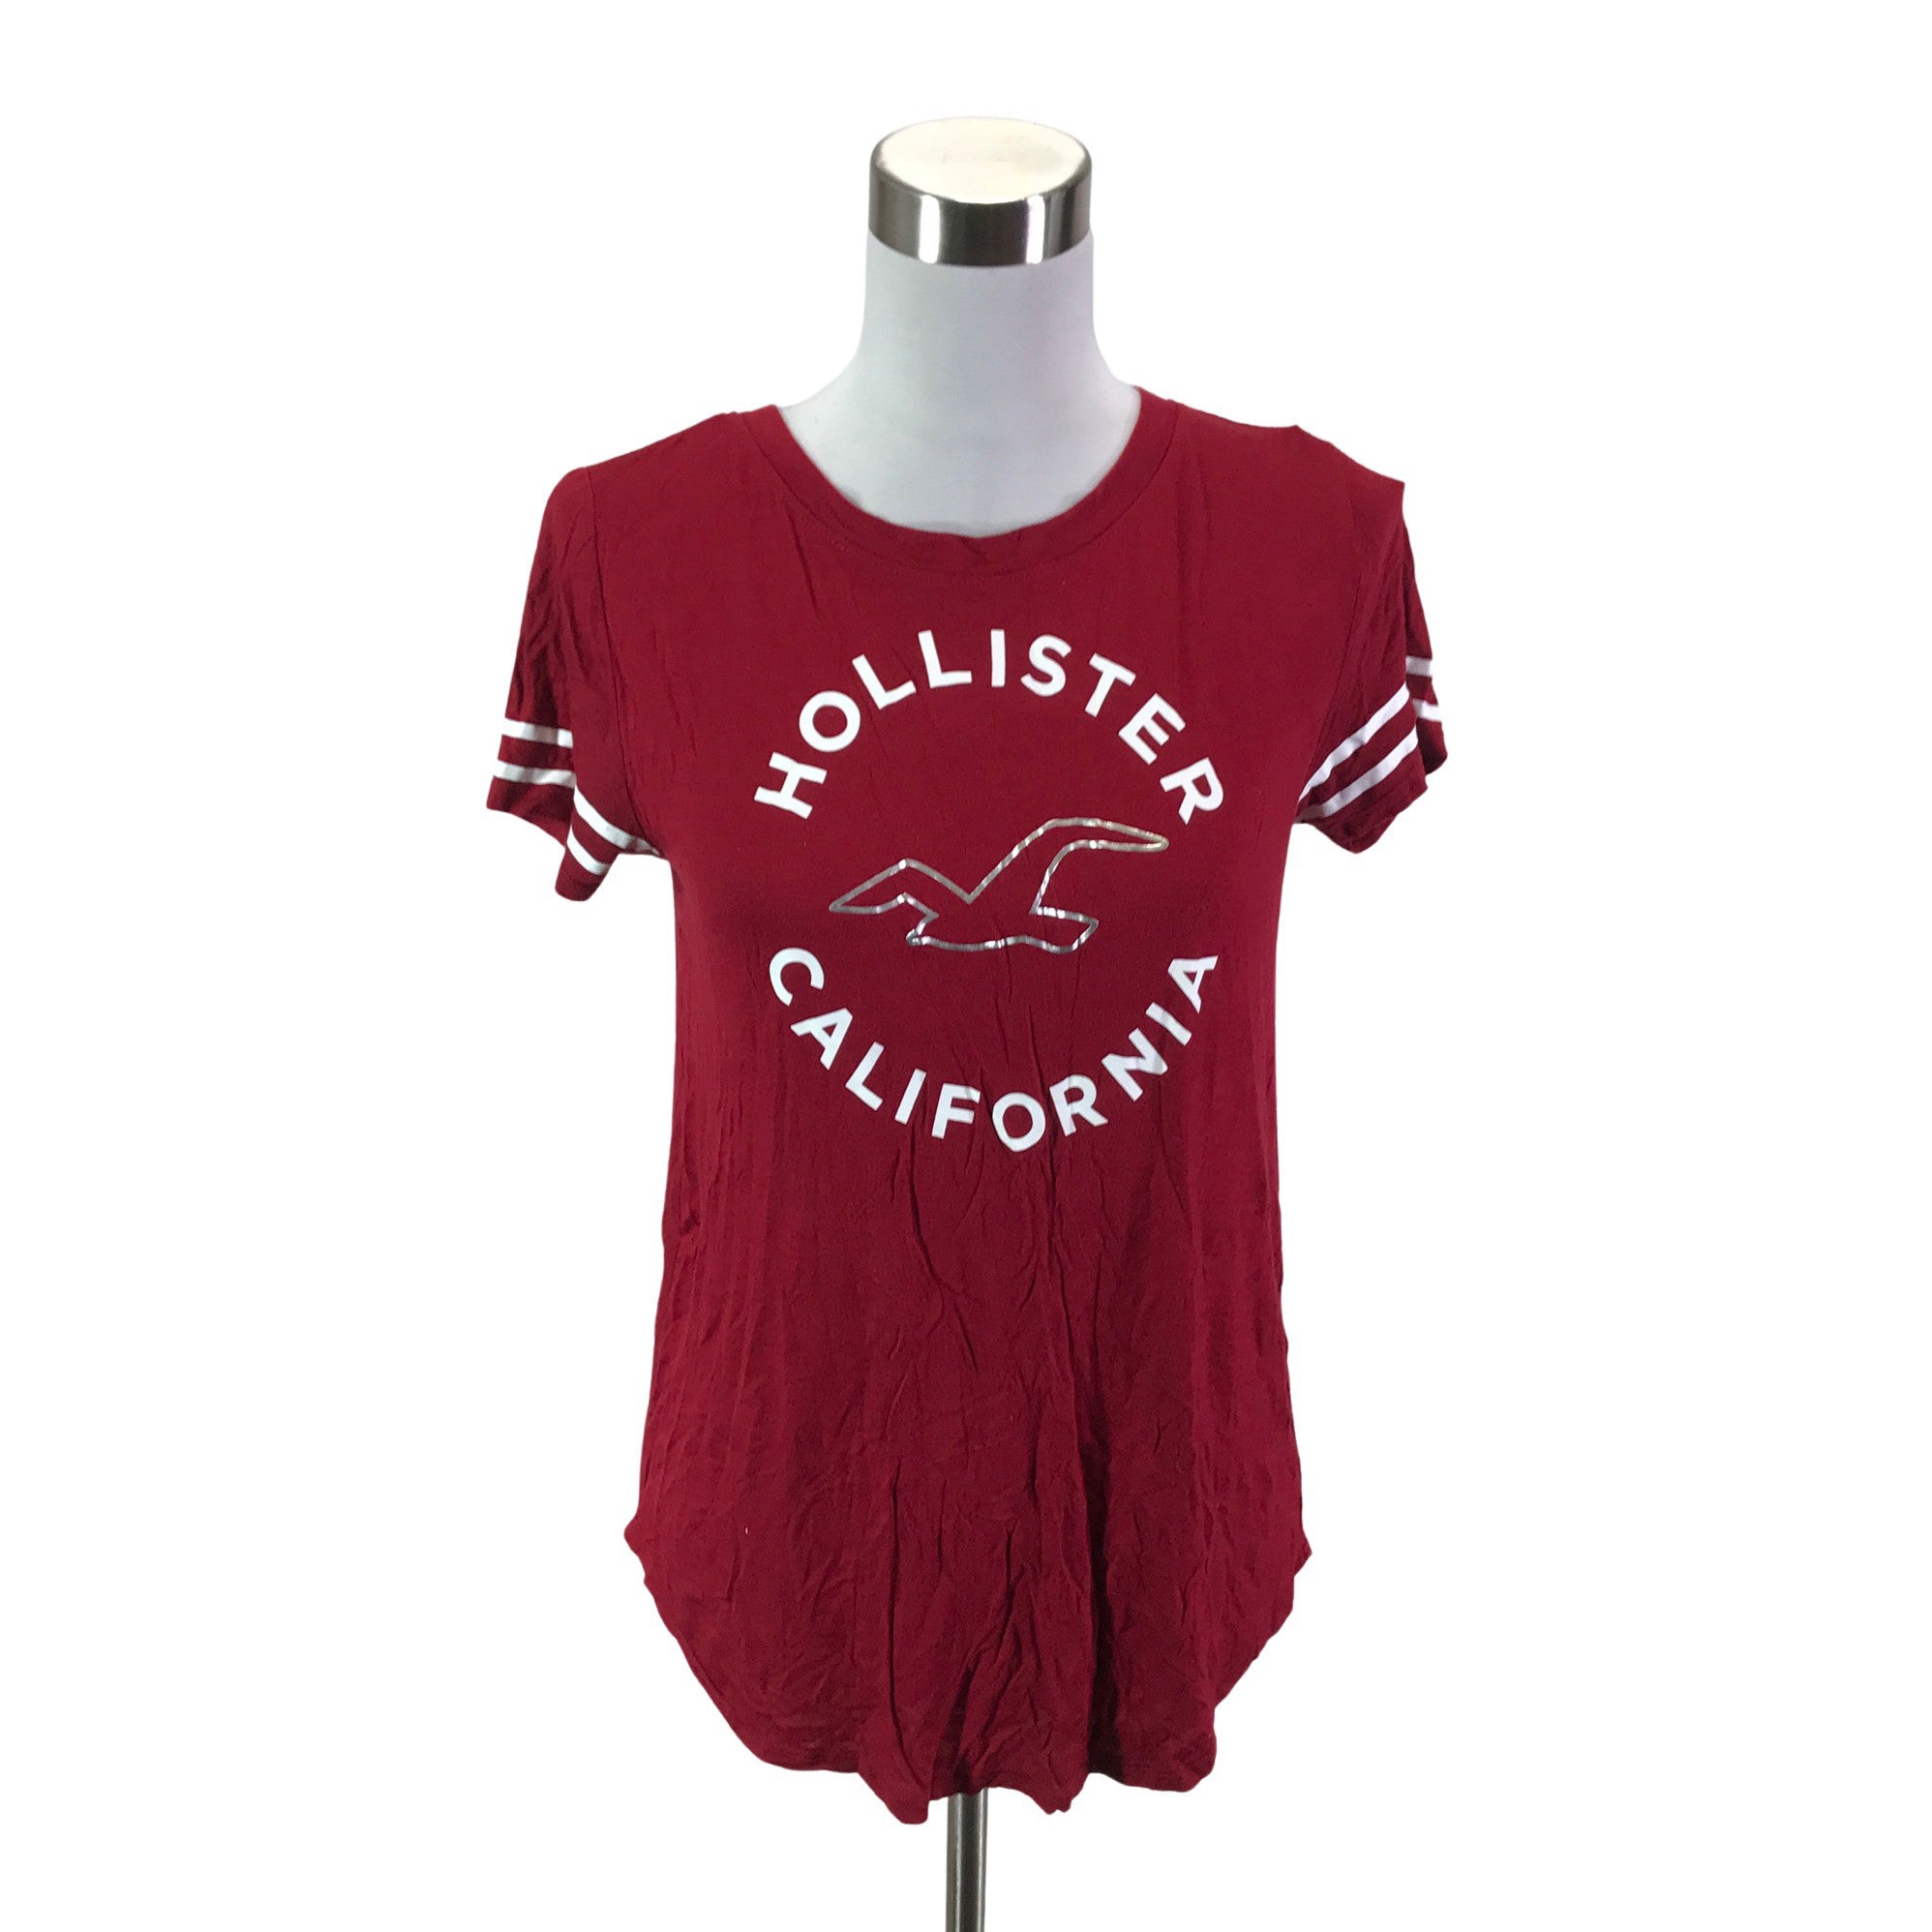 Women's Hollister T-shirt, size 36 (Red)